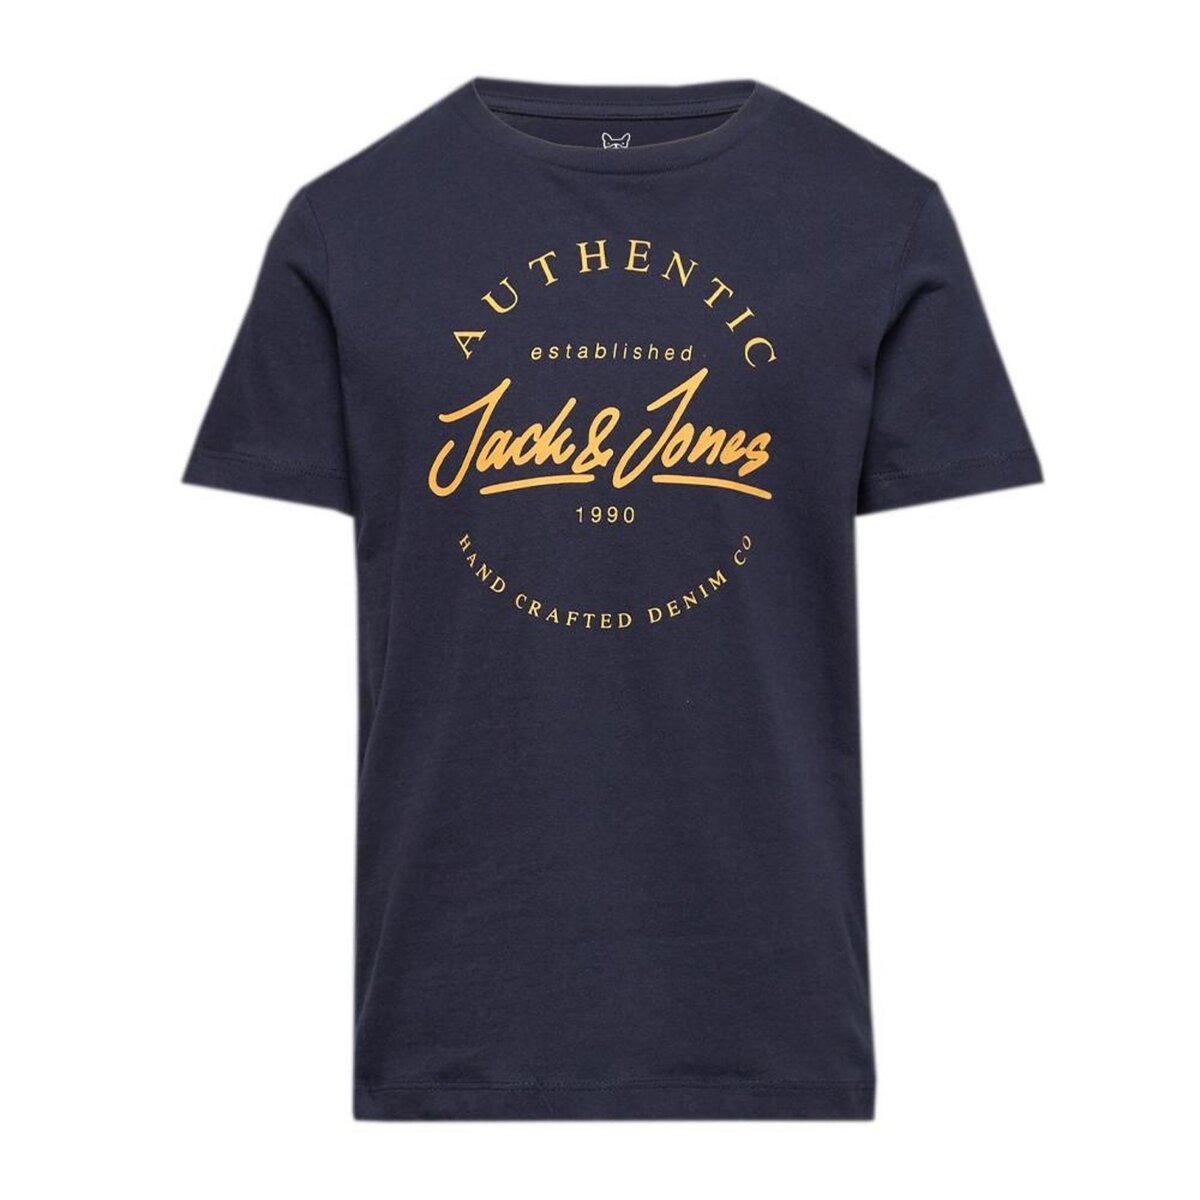  T-shirt Marine Jack and Jones Chest